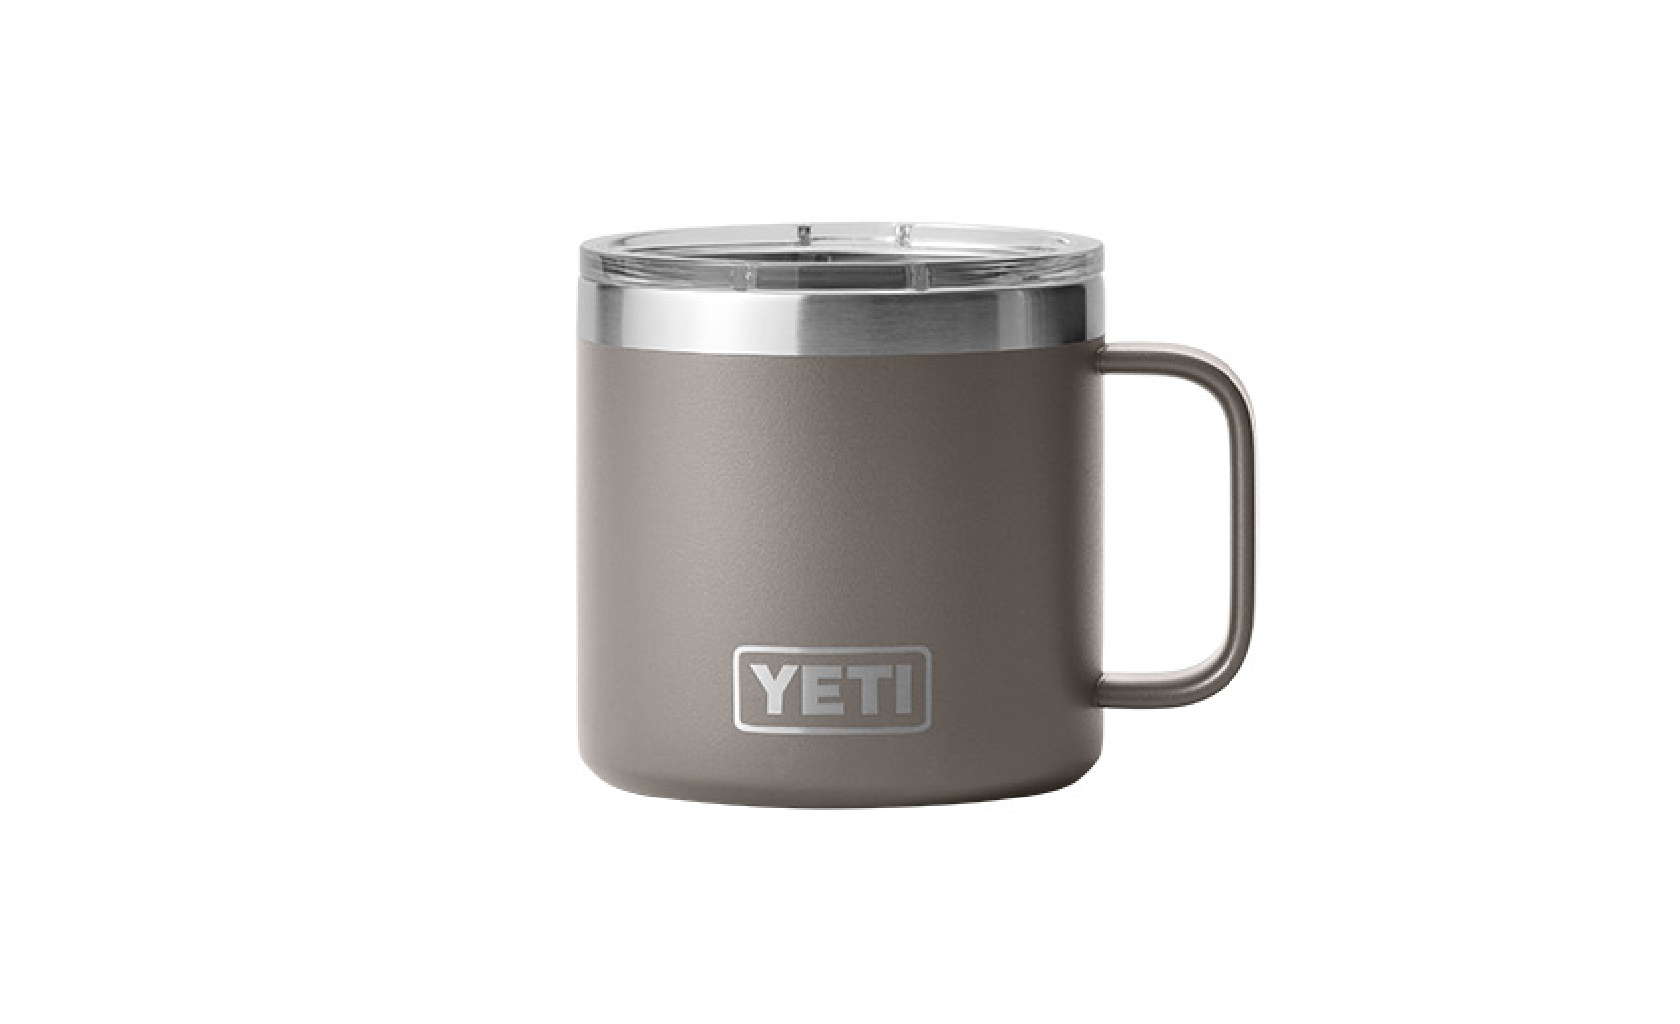 YETI / Rambler 14 oz Mug - Stainless